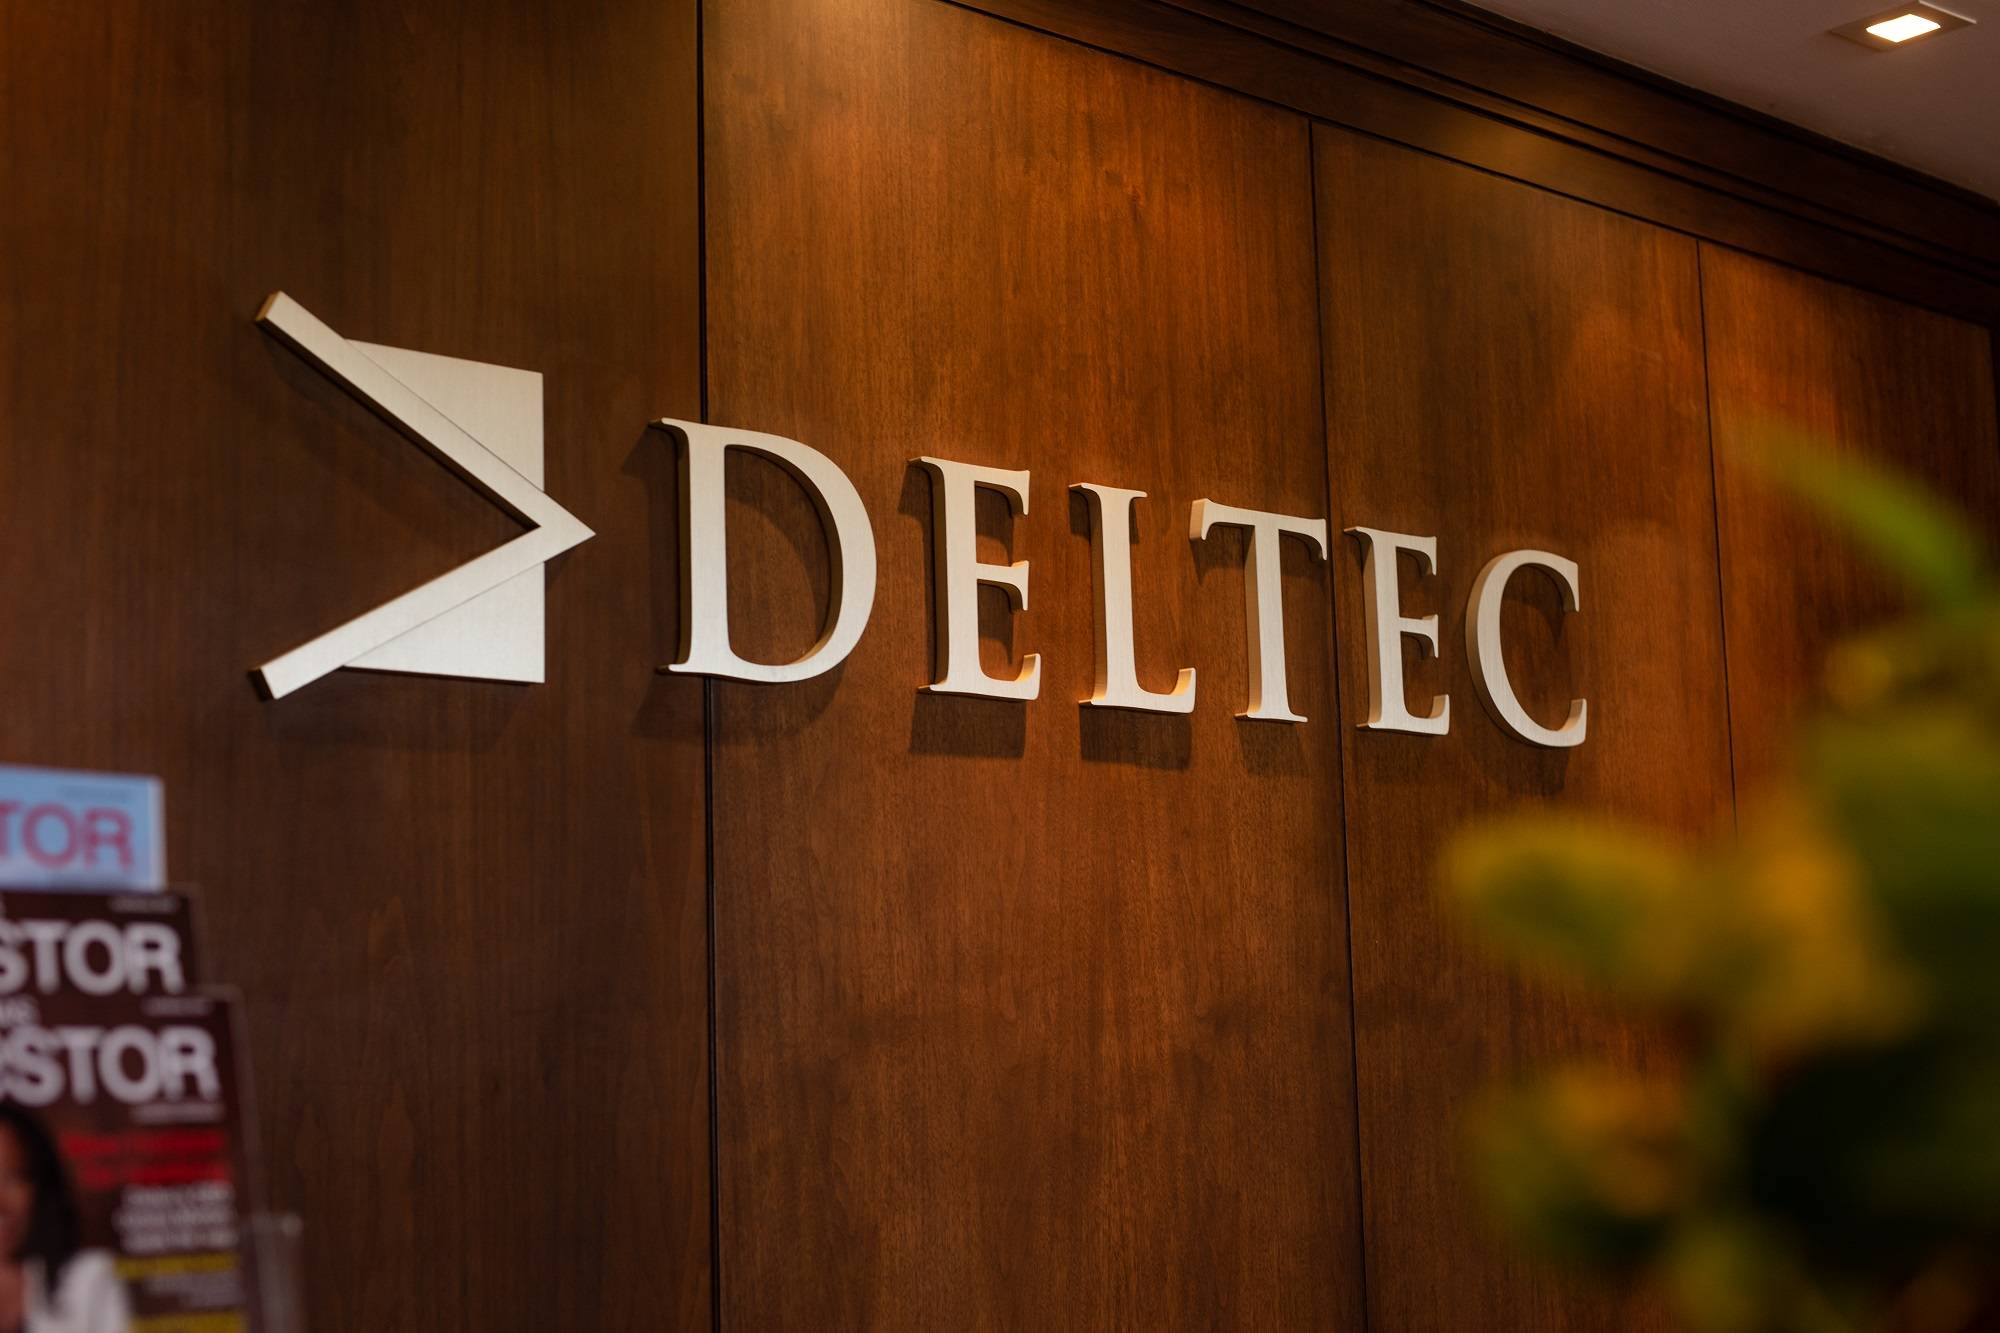 Ngân hàng của Tether bị kiện với cáo buộc tiếp tay cho FTX lừa đảo. Ảnh: Deltec Bank